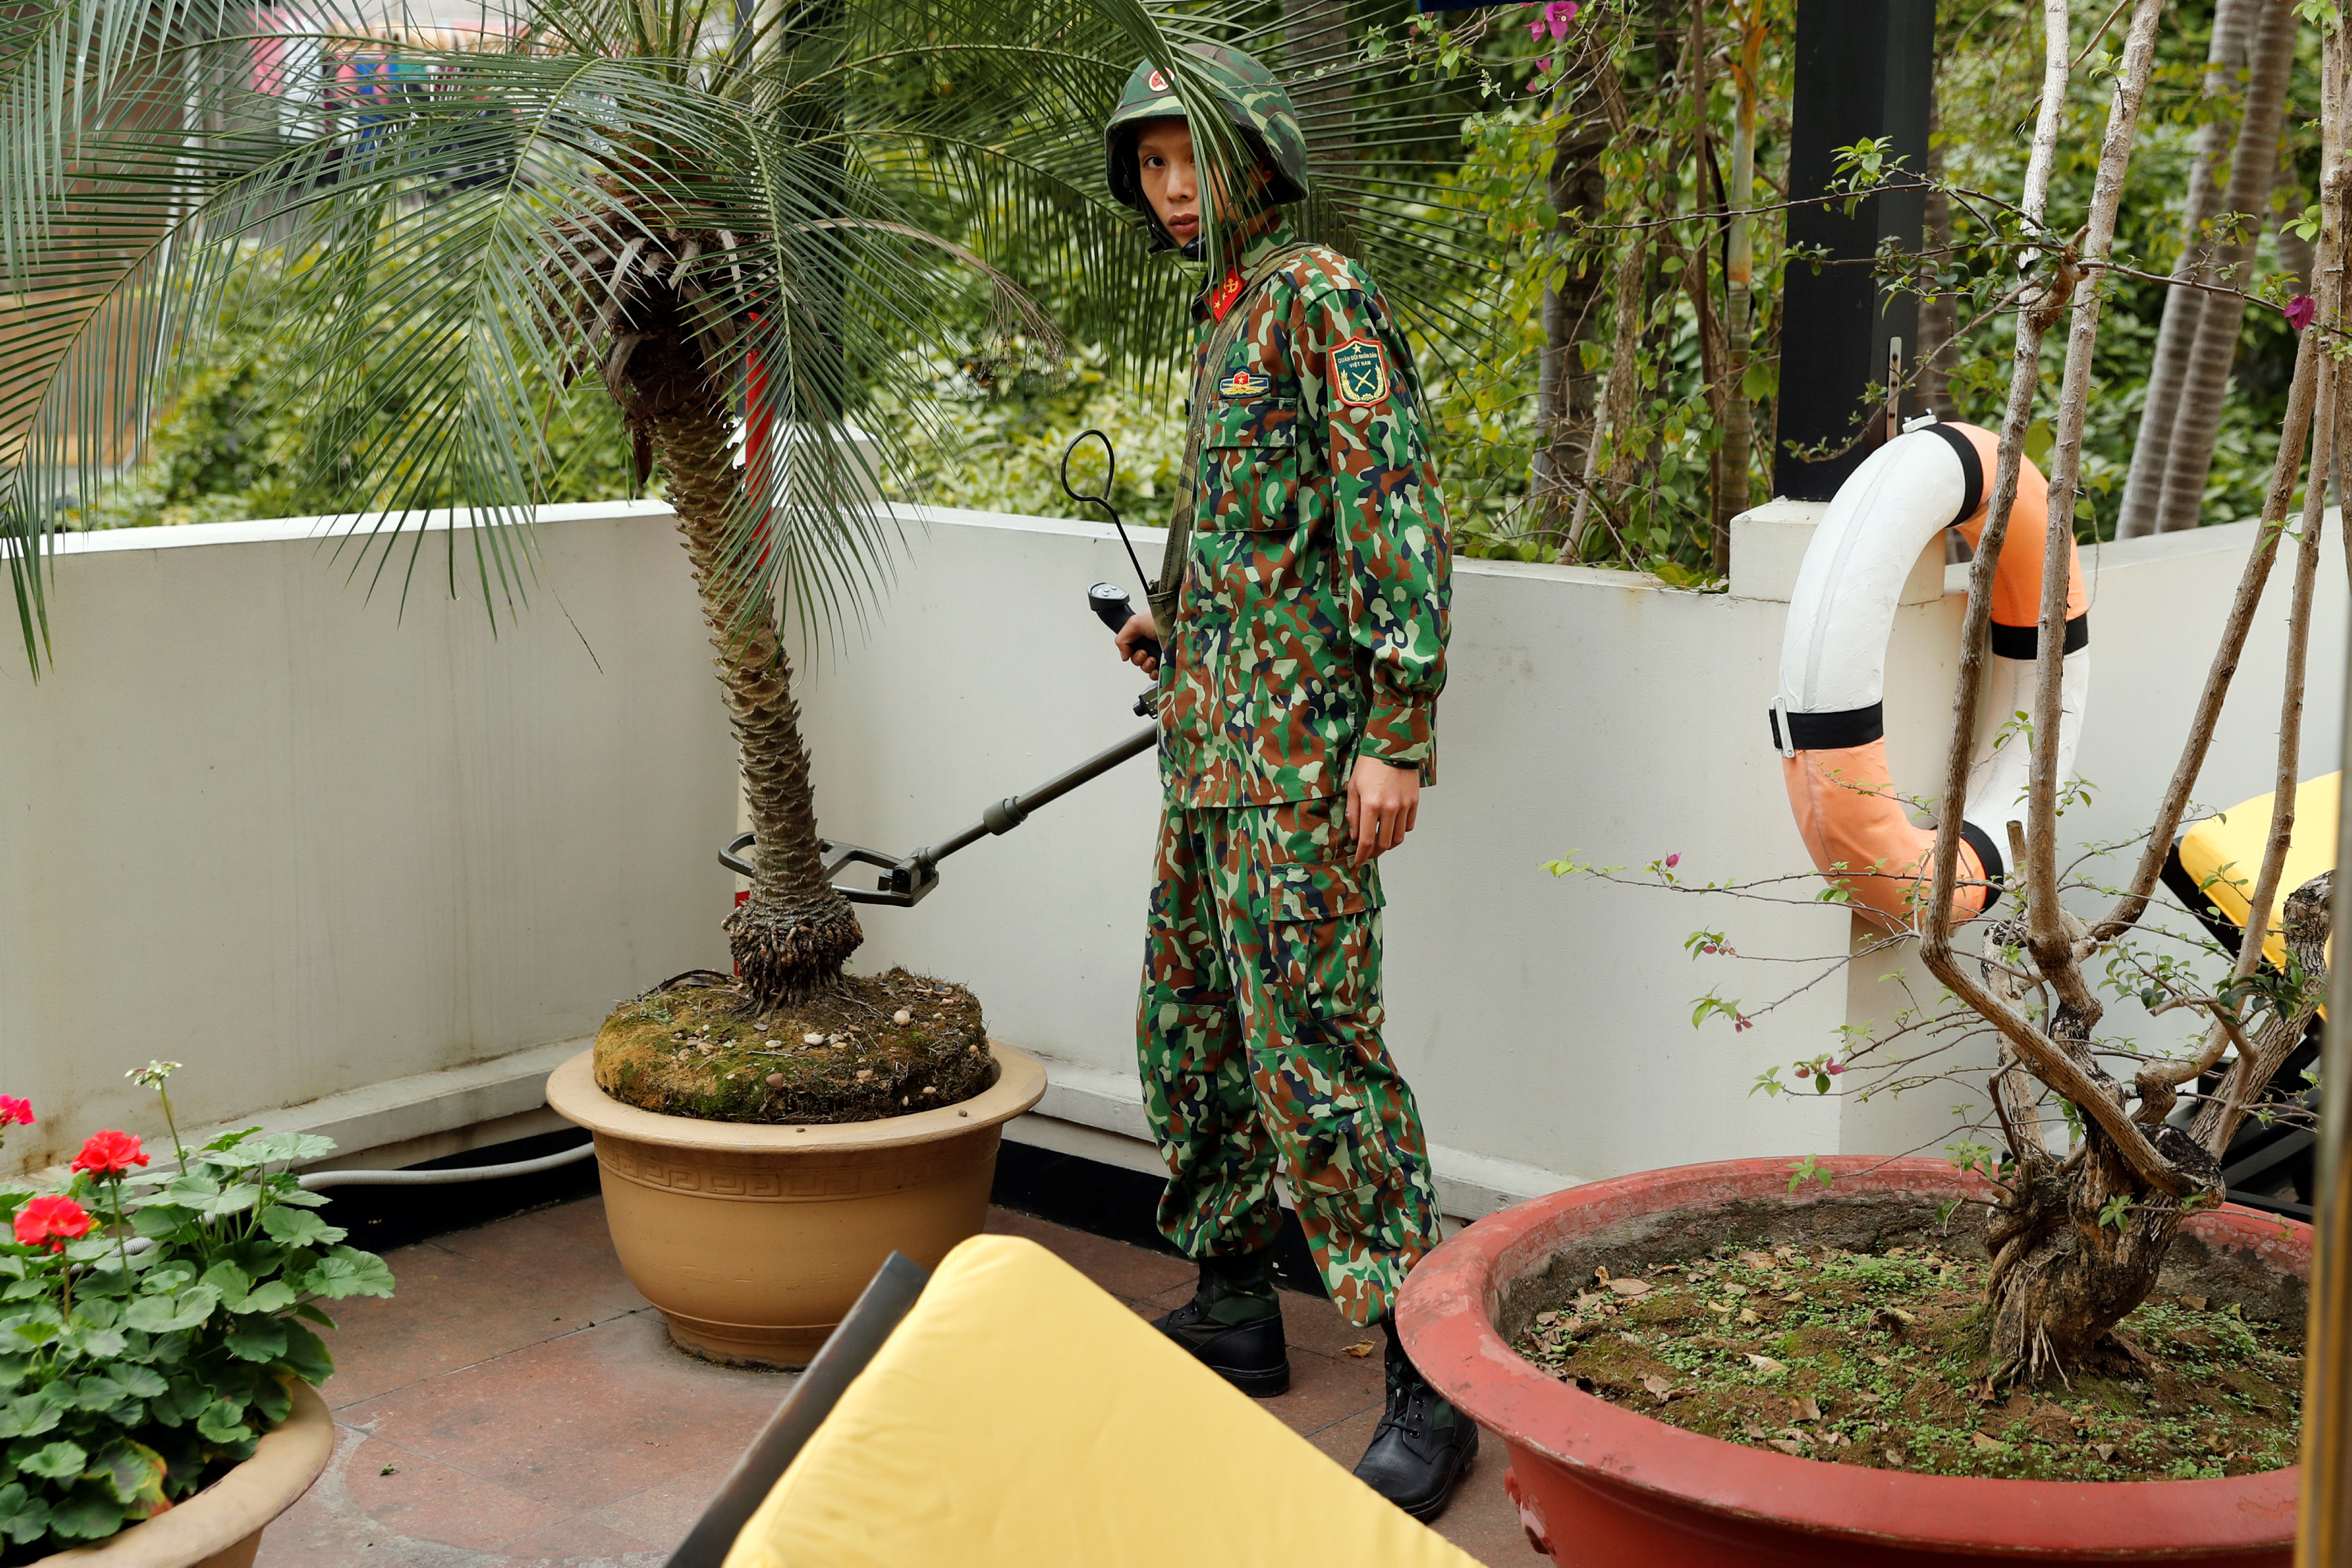 جندى فيتنامى يستخدم جهاز الكشف عن المتفجرات لتأمين الفندق